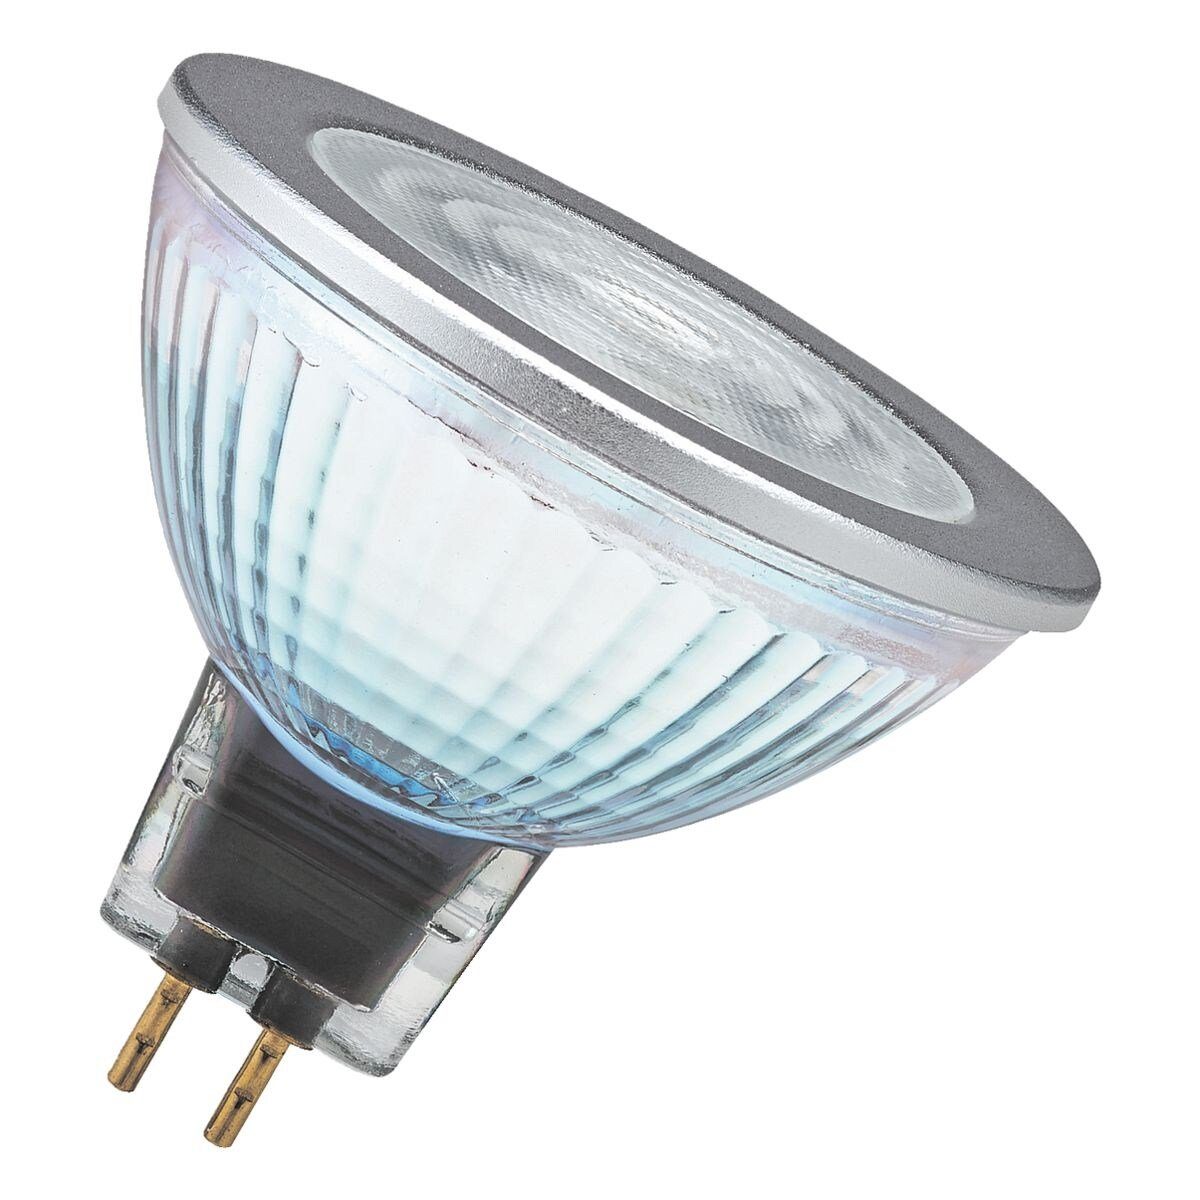 Osram LED-Leuchtmittel Superstar MR16 Retrofit-Stecksockel mit GU5.3, kaltweiß, W, 50, 8